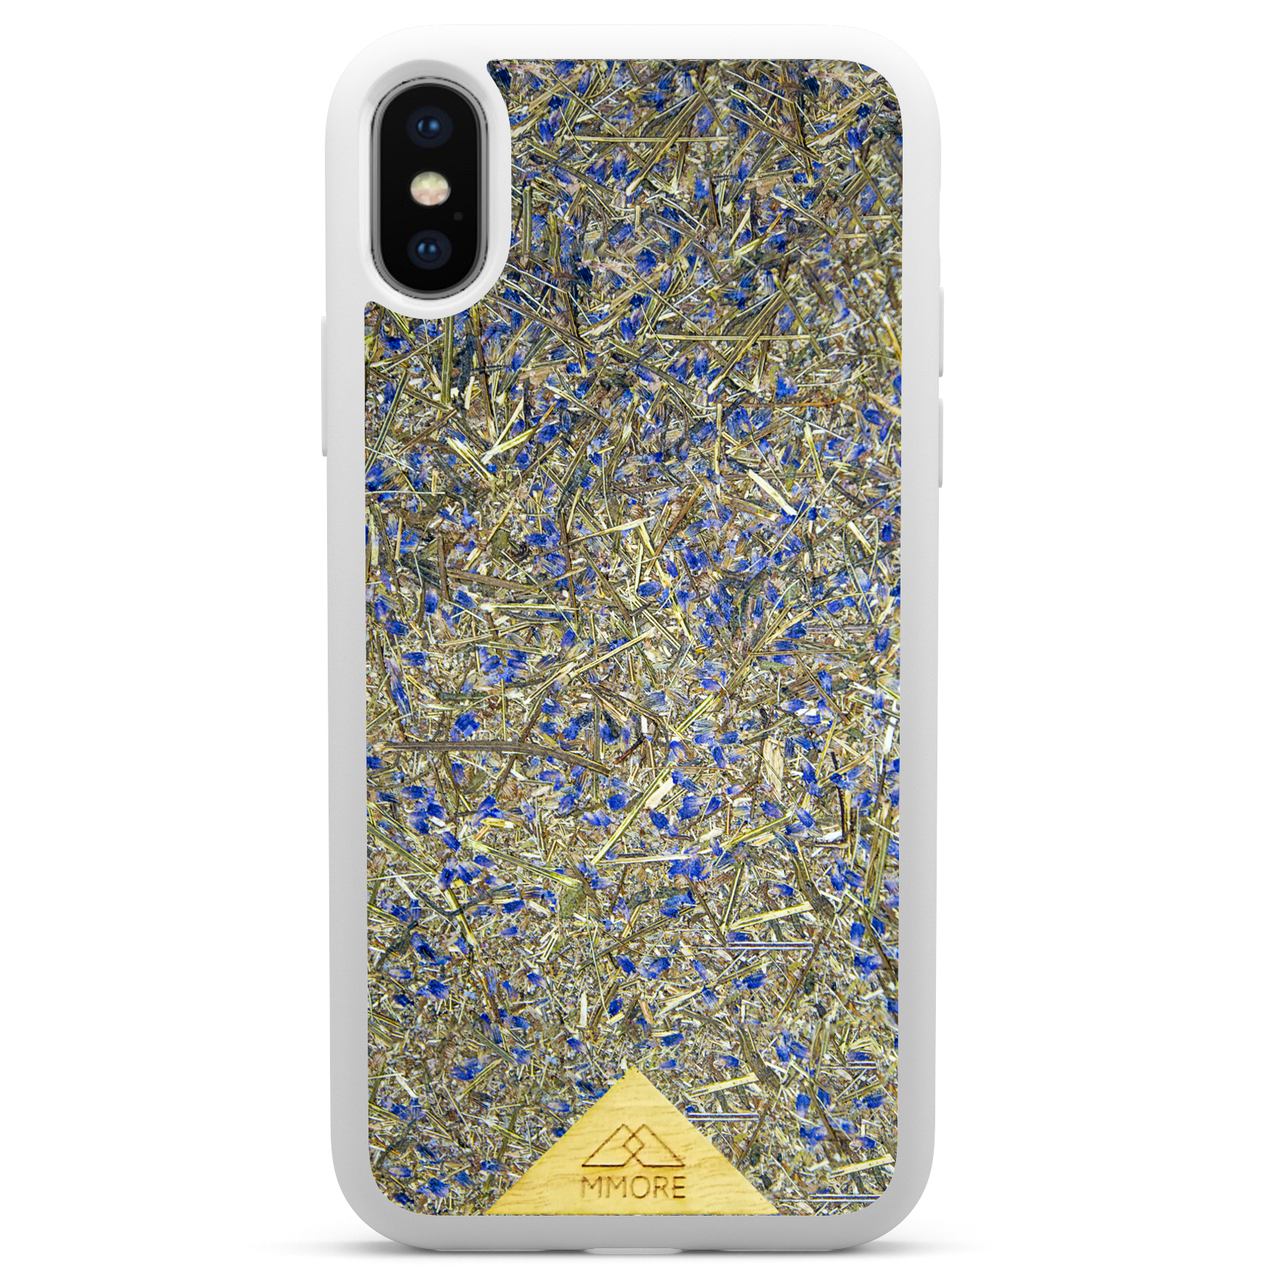 Чехол для телефона с белой рамкой и бледно-лиловым цветом для iPhone xs